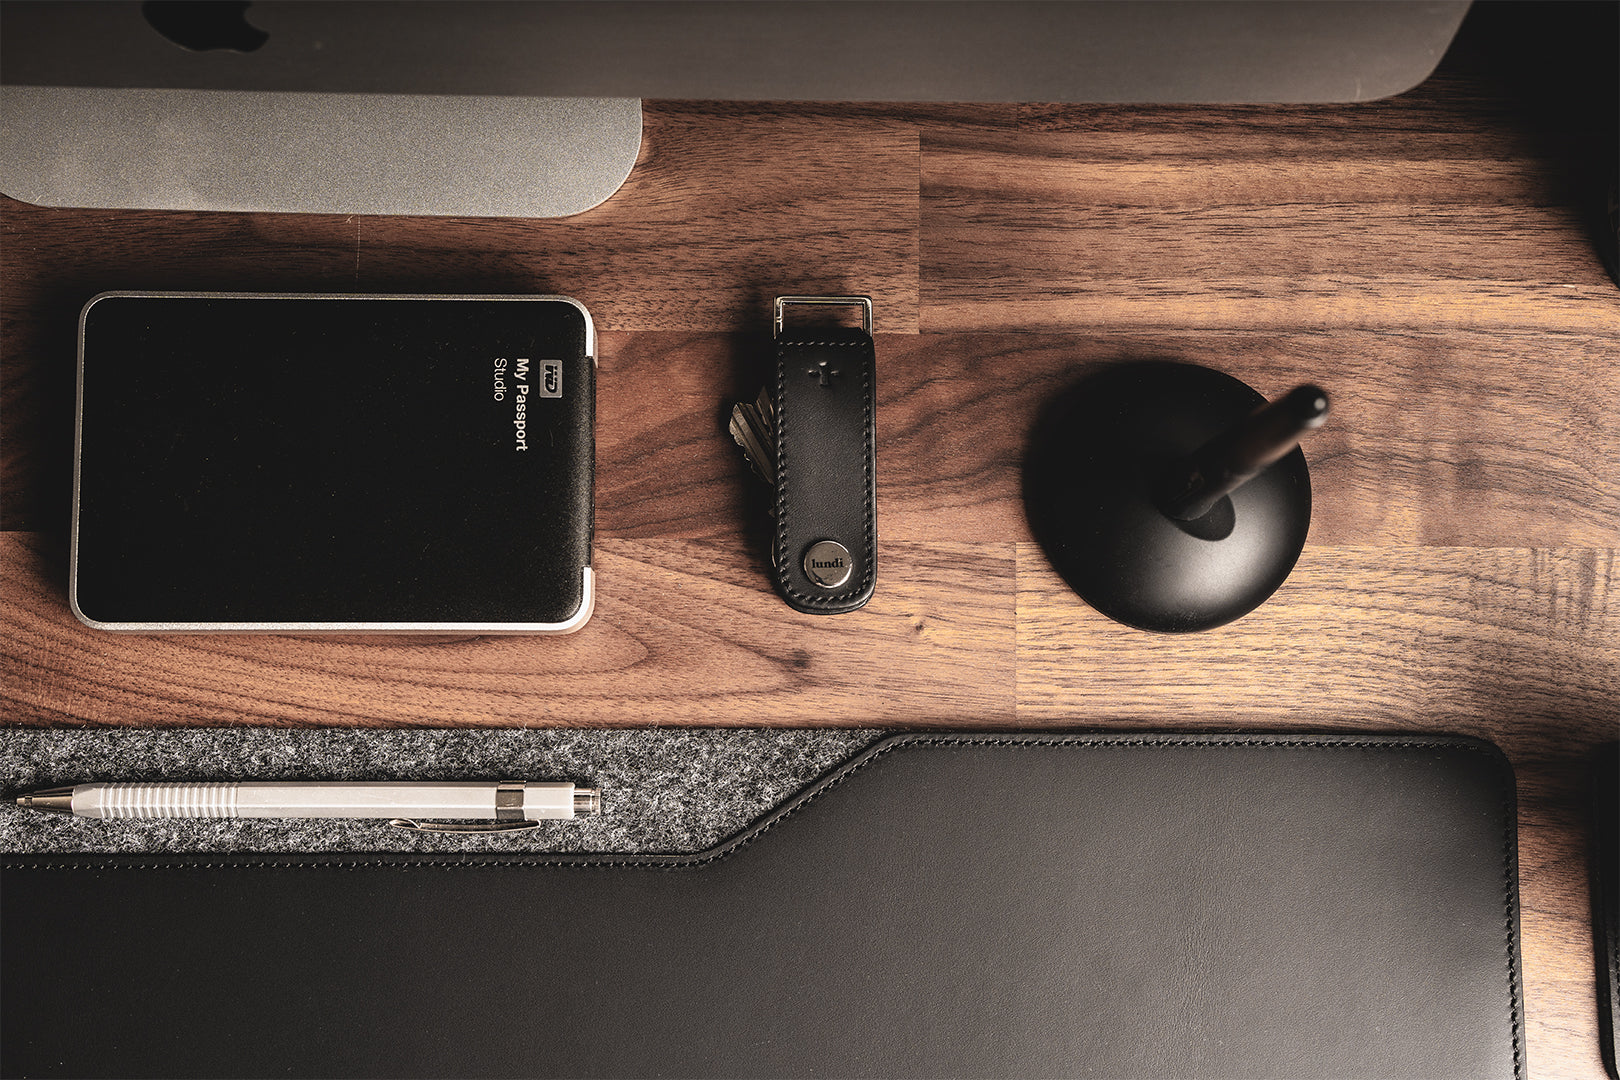 Leather Desk Mat - L Size | LILIO Black